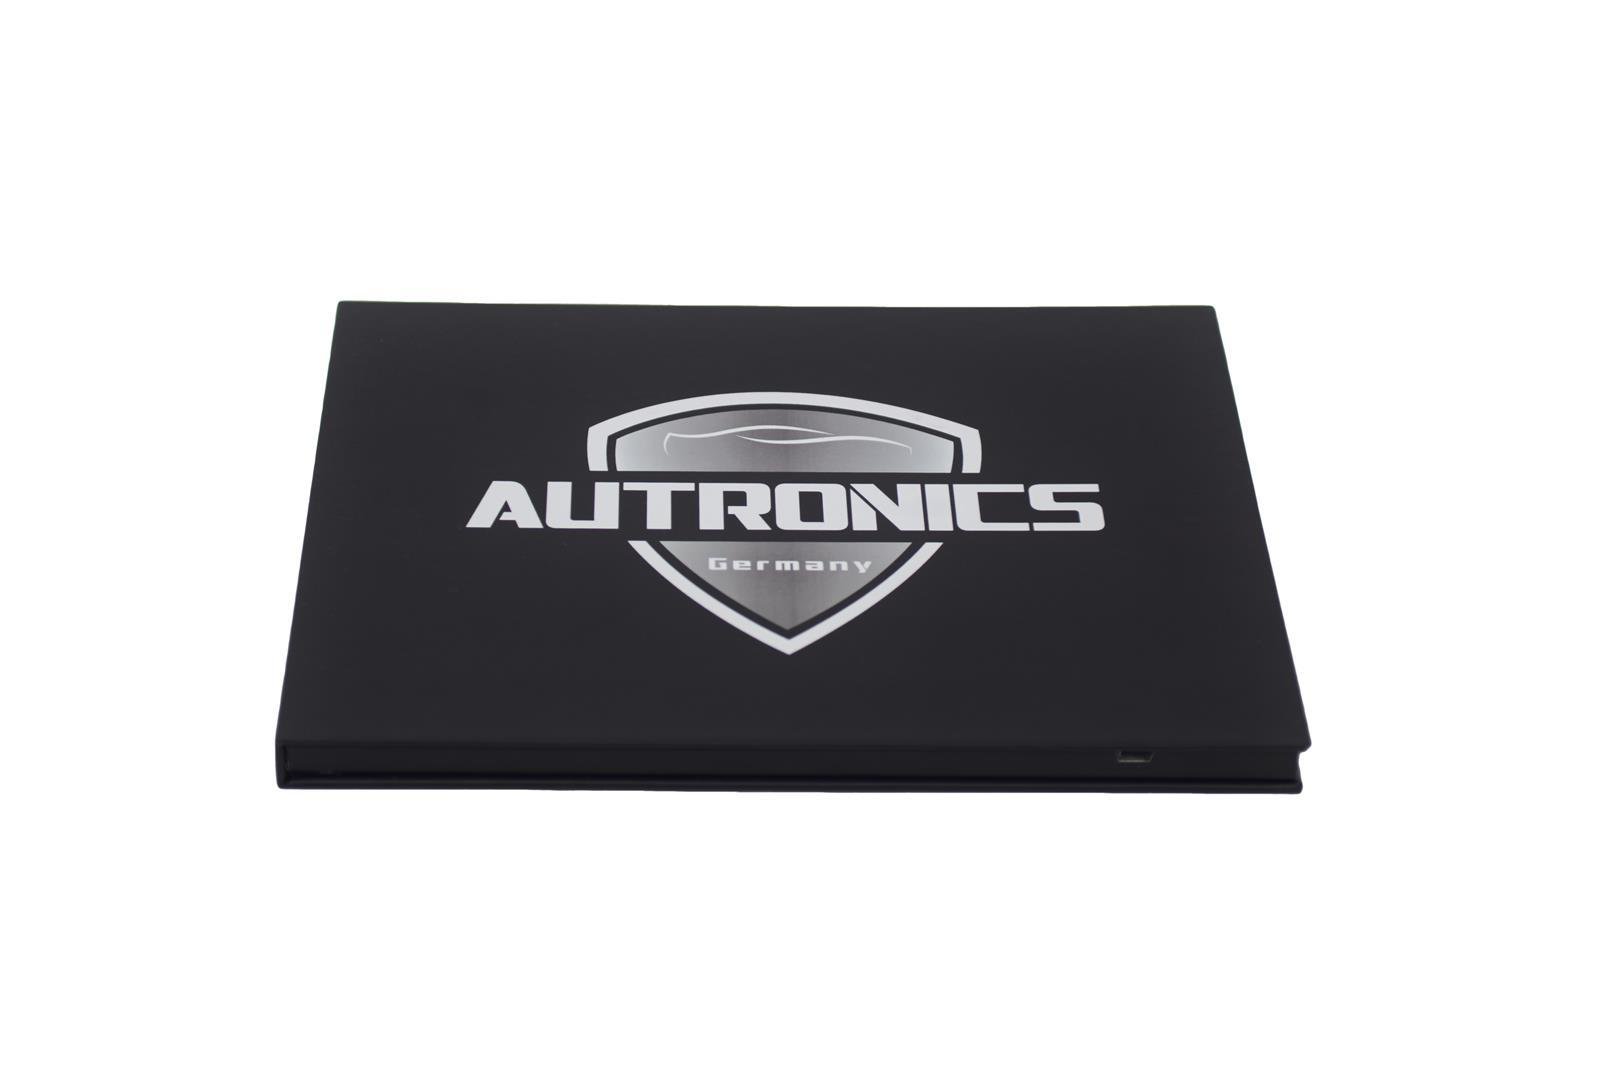 01 Autronics Geschenkkarte mit Monitor